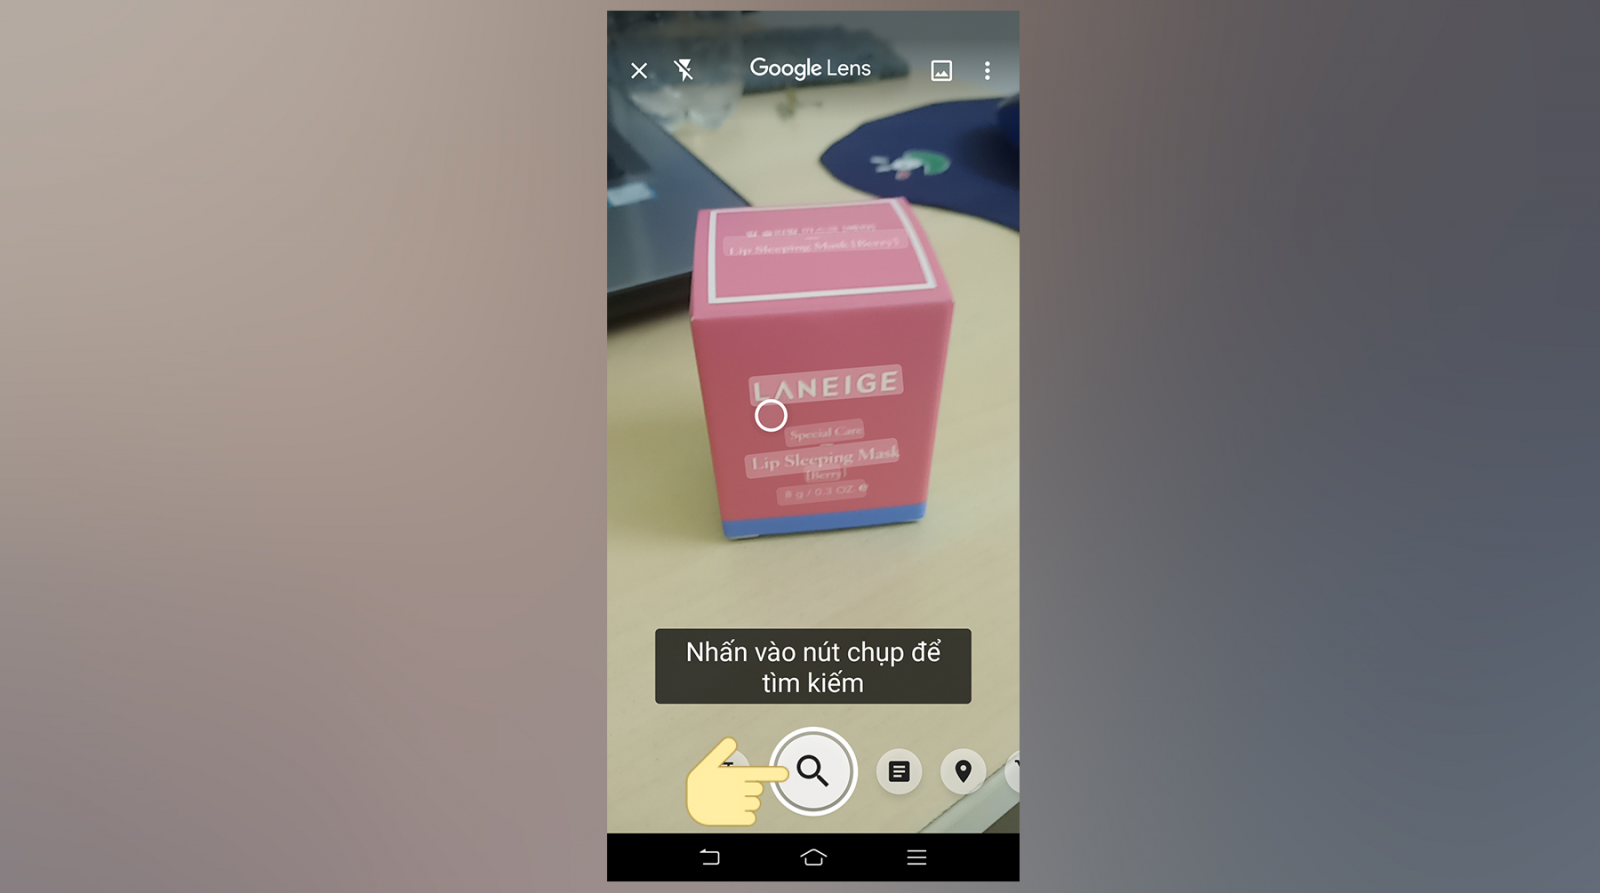 Google Ống Kính là 1 dụng cụ khiến cho bạn lần tìm tòi vấn đề hình hình họa nhanh gọn lẹ bên trên điện thoại thông minh Android